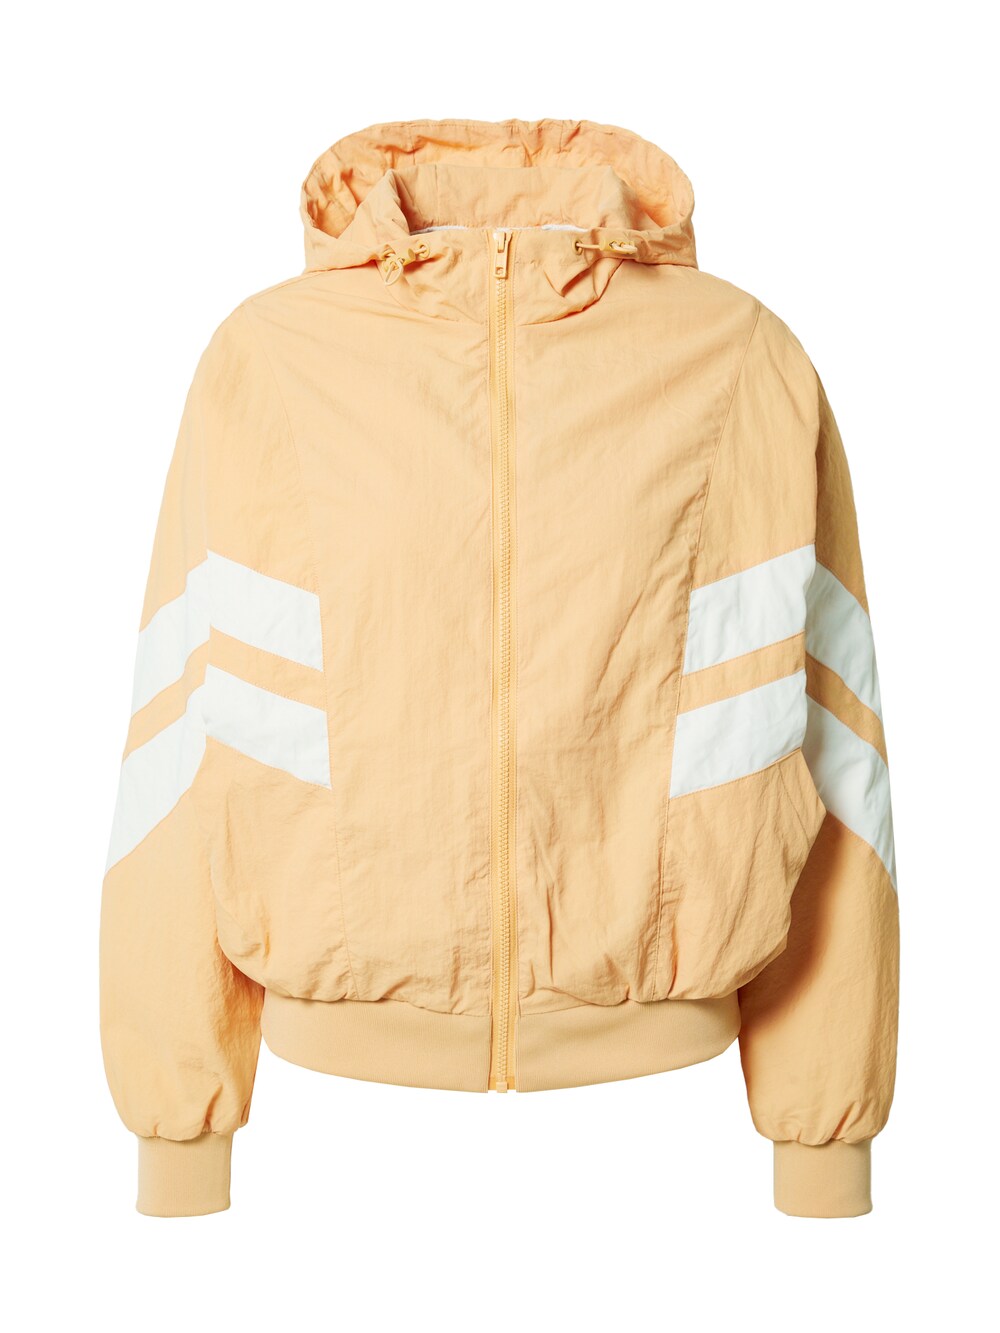 Межсезонная куртка Urban Classics Crinkle Batwing, пастельно-оранжевый куртка urban classics crinkle batwing оранжевый